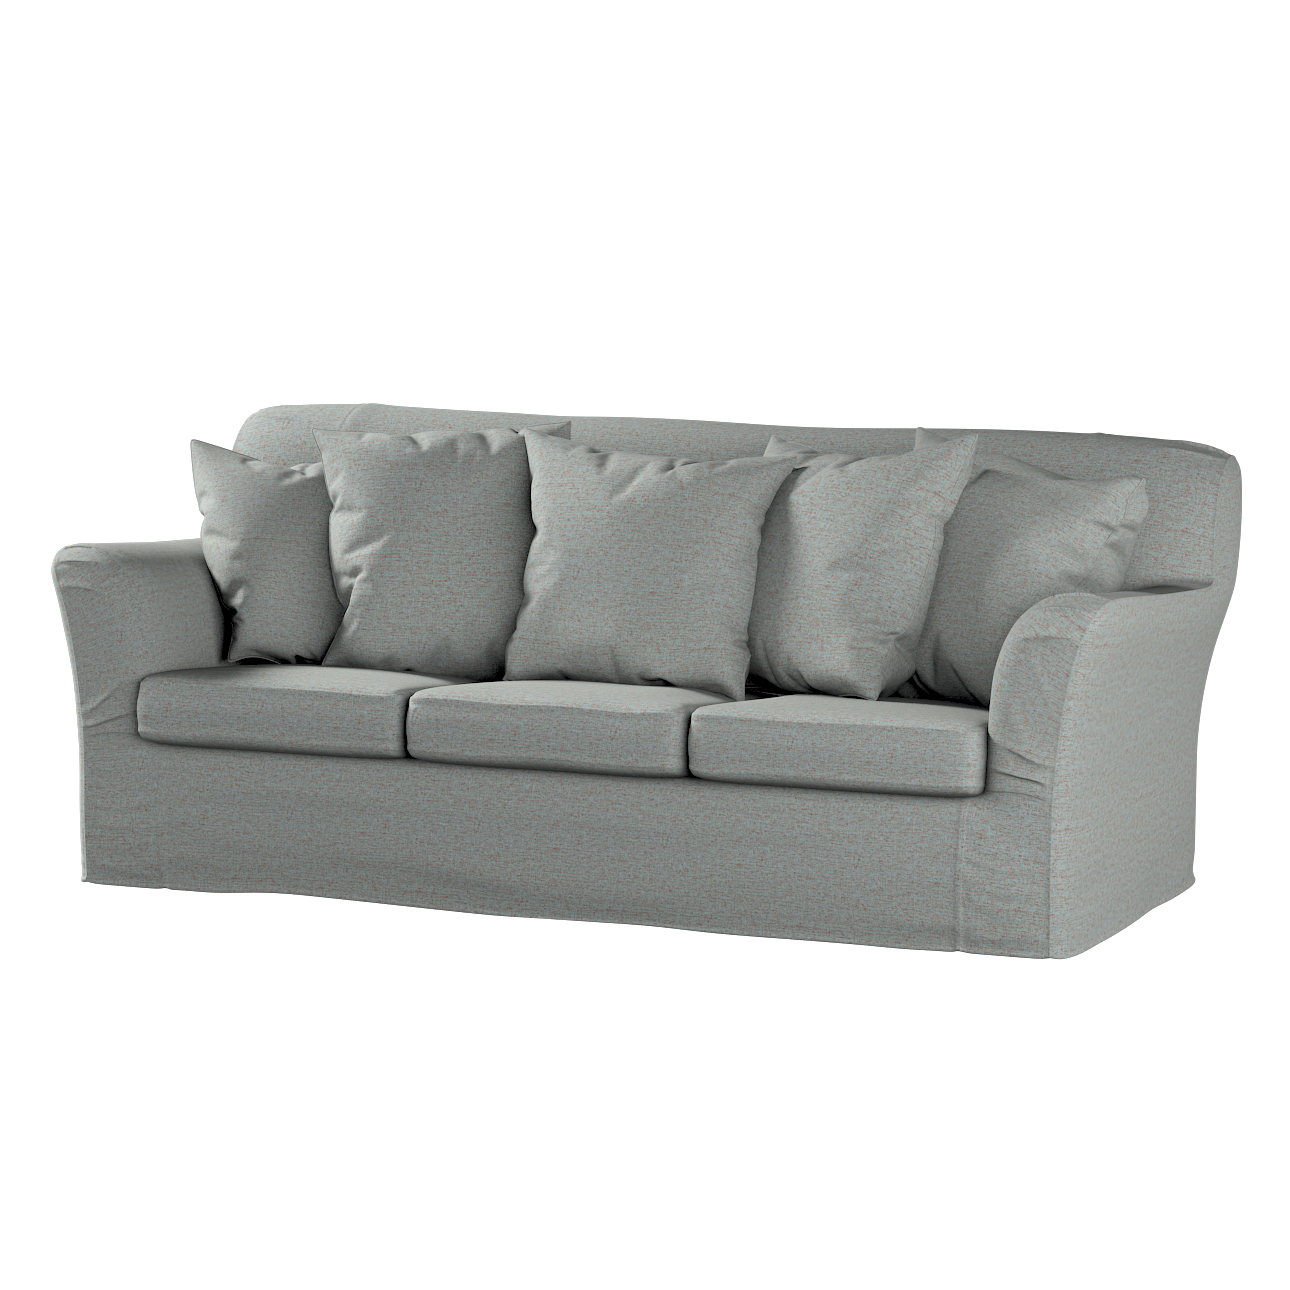 Bezug für Tomelilla 3-Sitzer Sofa nicht ausklappbar, blau, Sofahusse, Tomel günstig online kaufen